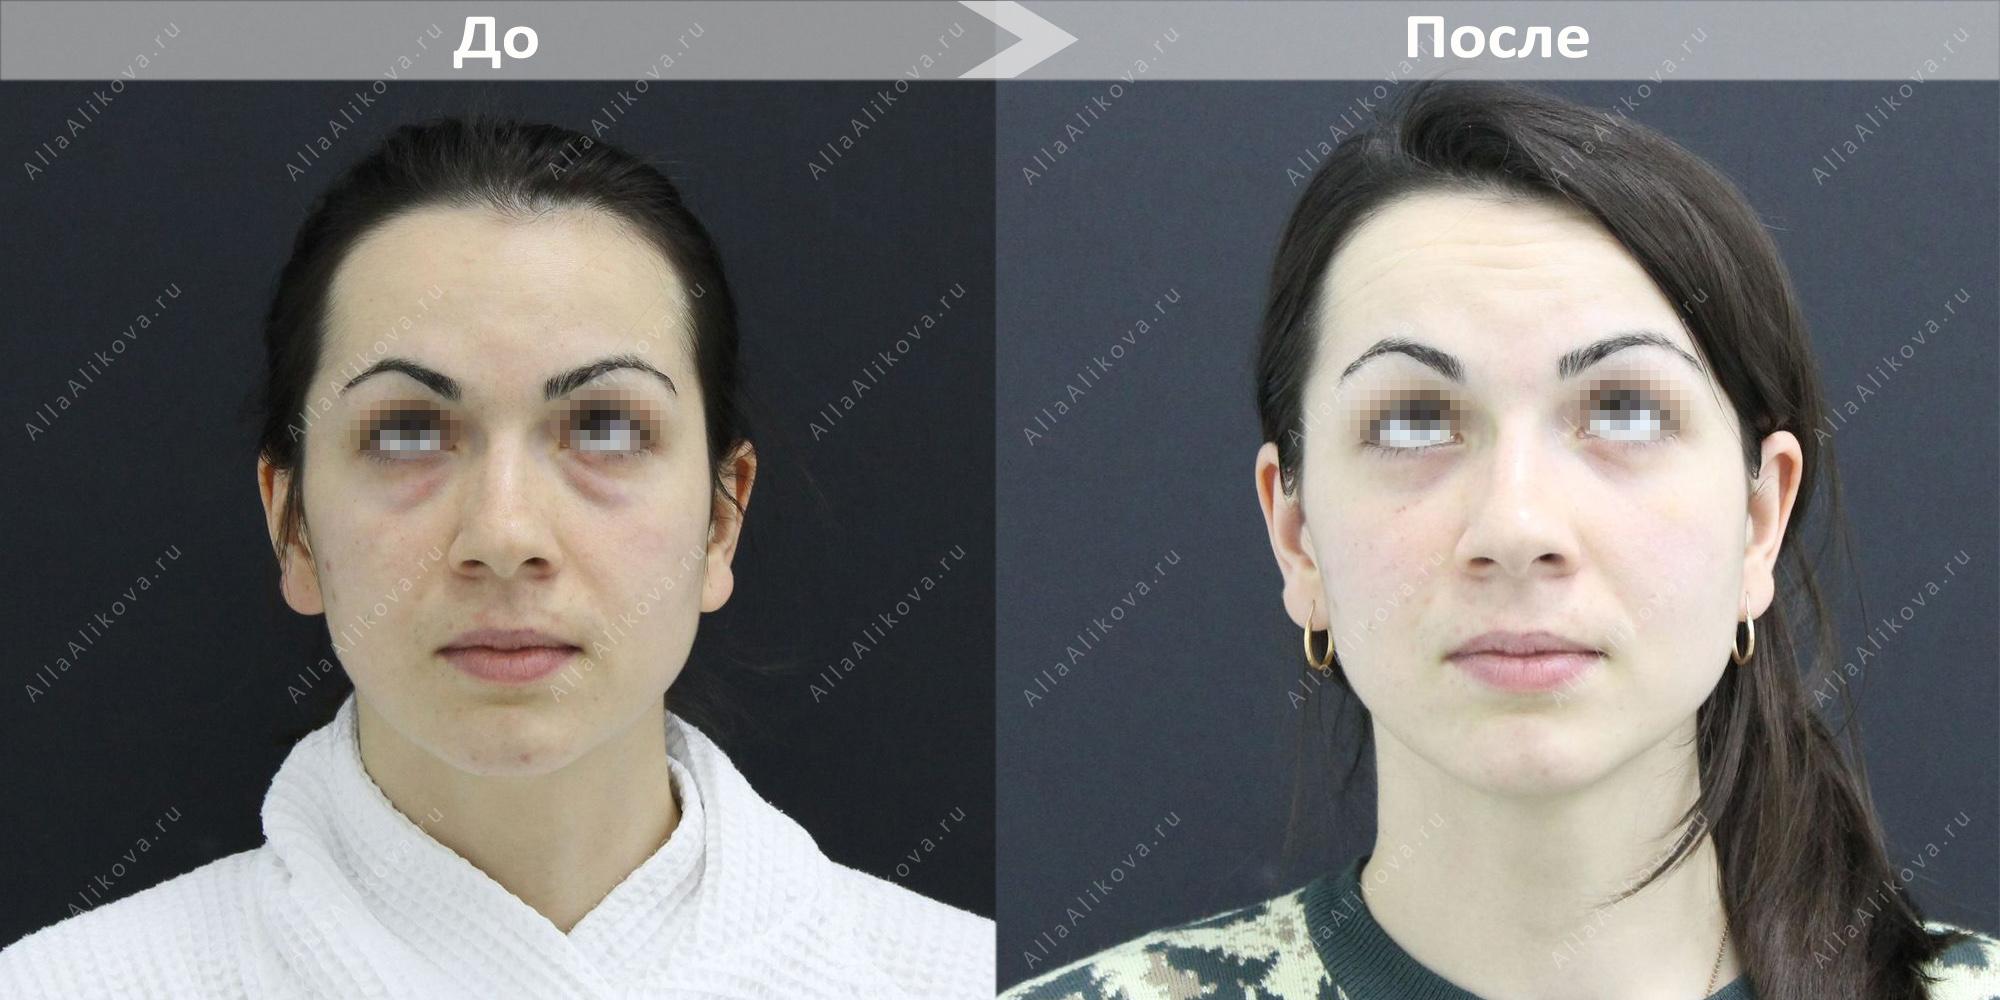 Трансконъюнктивальная нижняя блефаропластика фото до и после